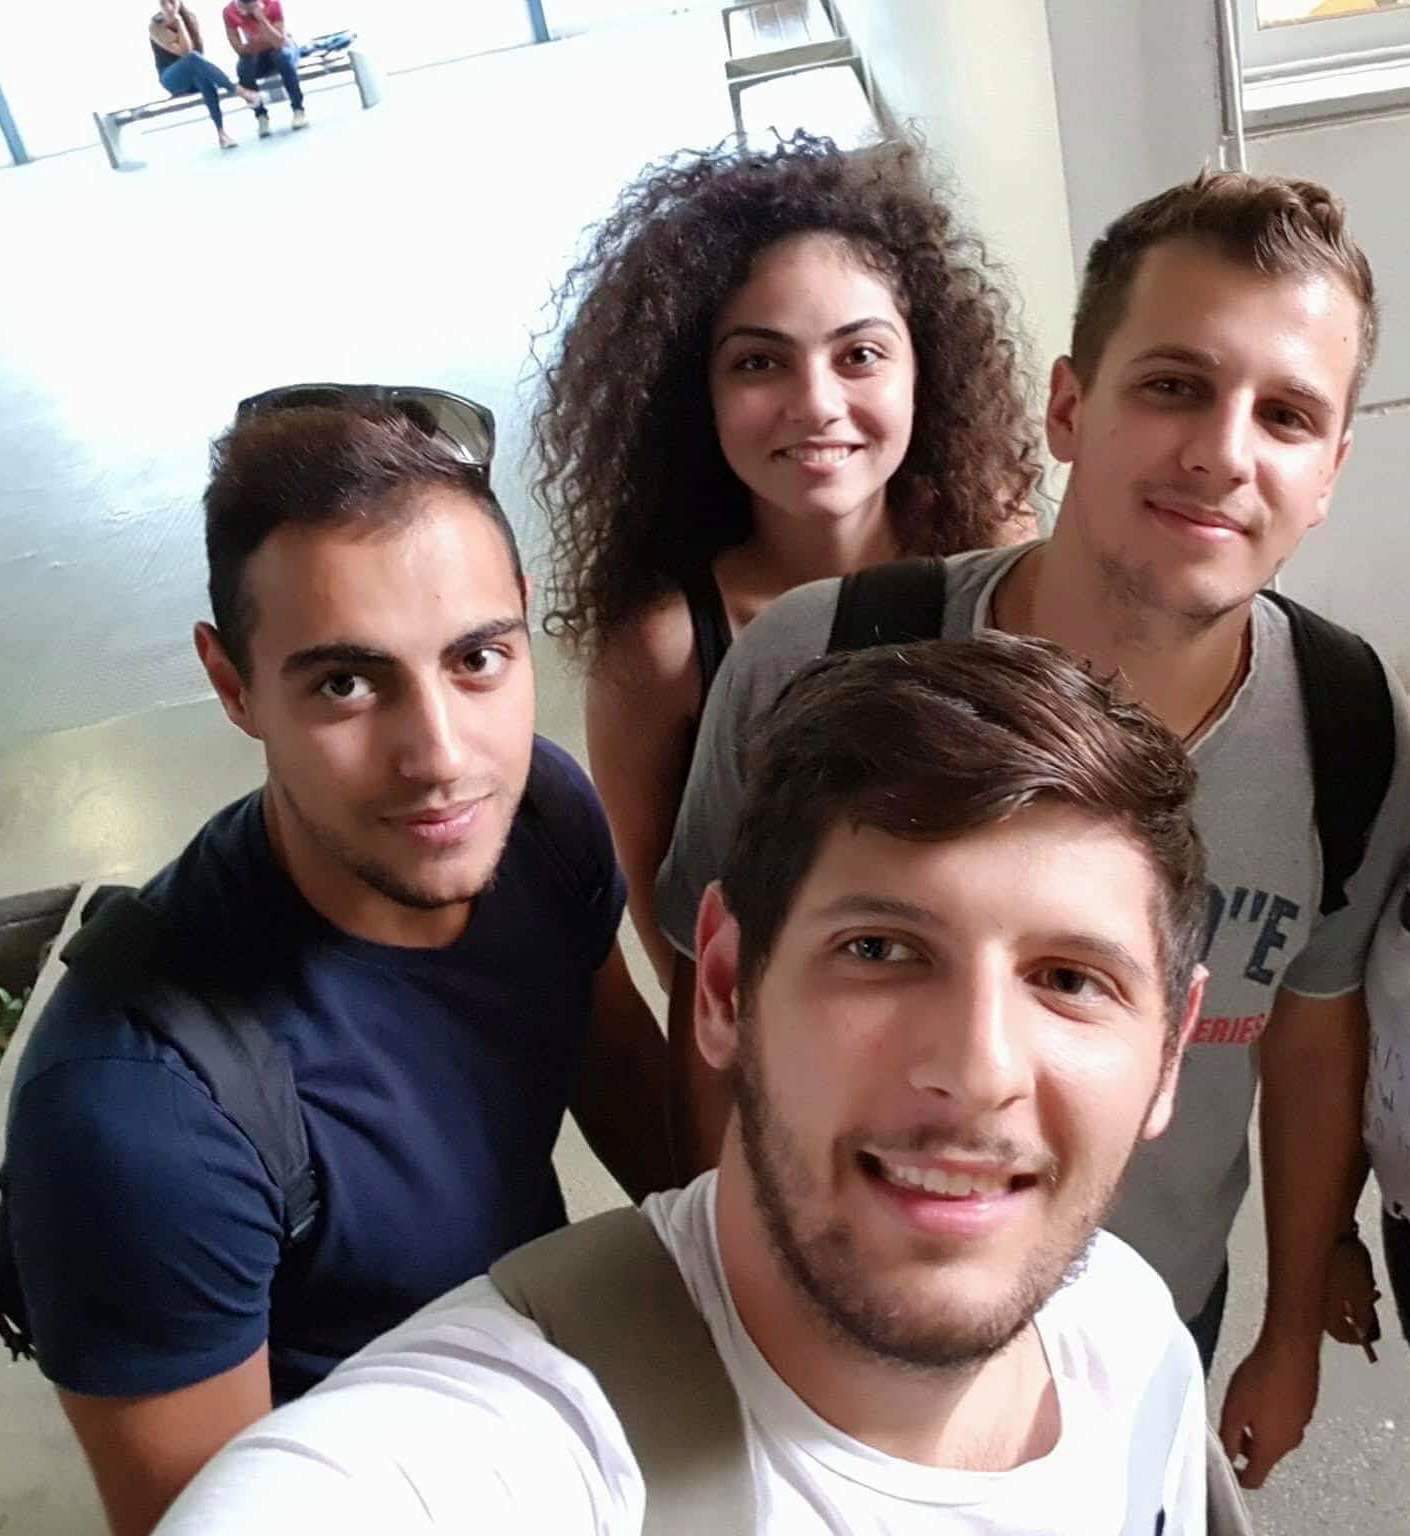 Προπτυχιακοί φοιτητές του Τμήματος Πληροφορικής του Πανεπιστημίου Κύπρου στους νικητές του Διαγωνισμού Reload Greece Young Εntrepreneurs Program 2019 - 2020